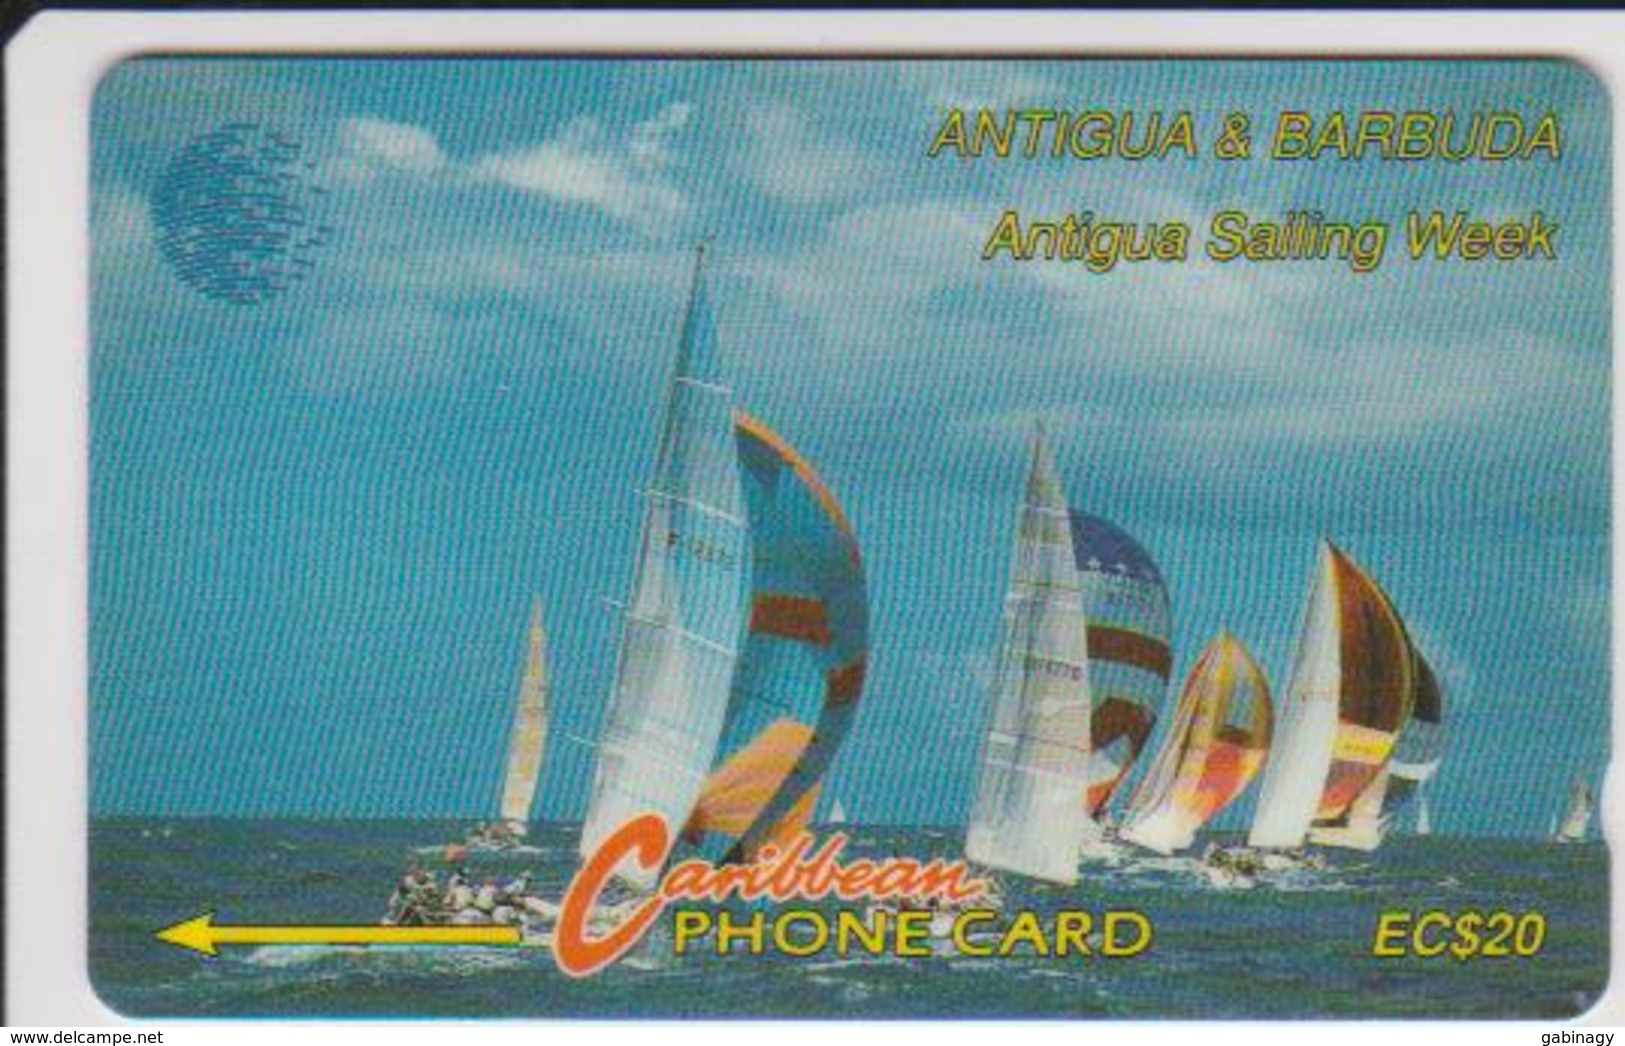 ANTIGUA - 13CATB - ANTIGUA SAILING WEEK - Antigua E Barbuda